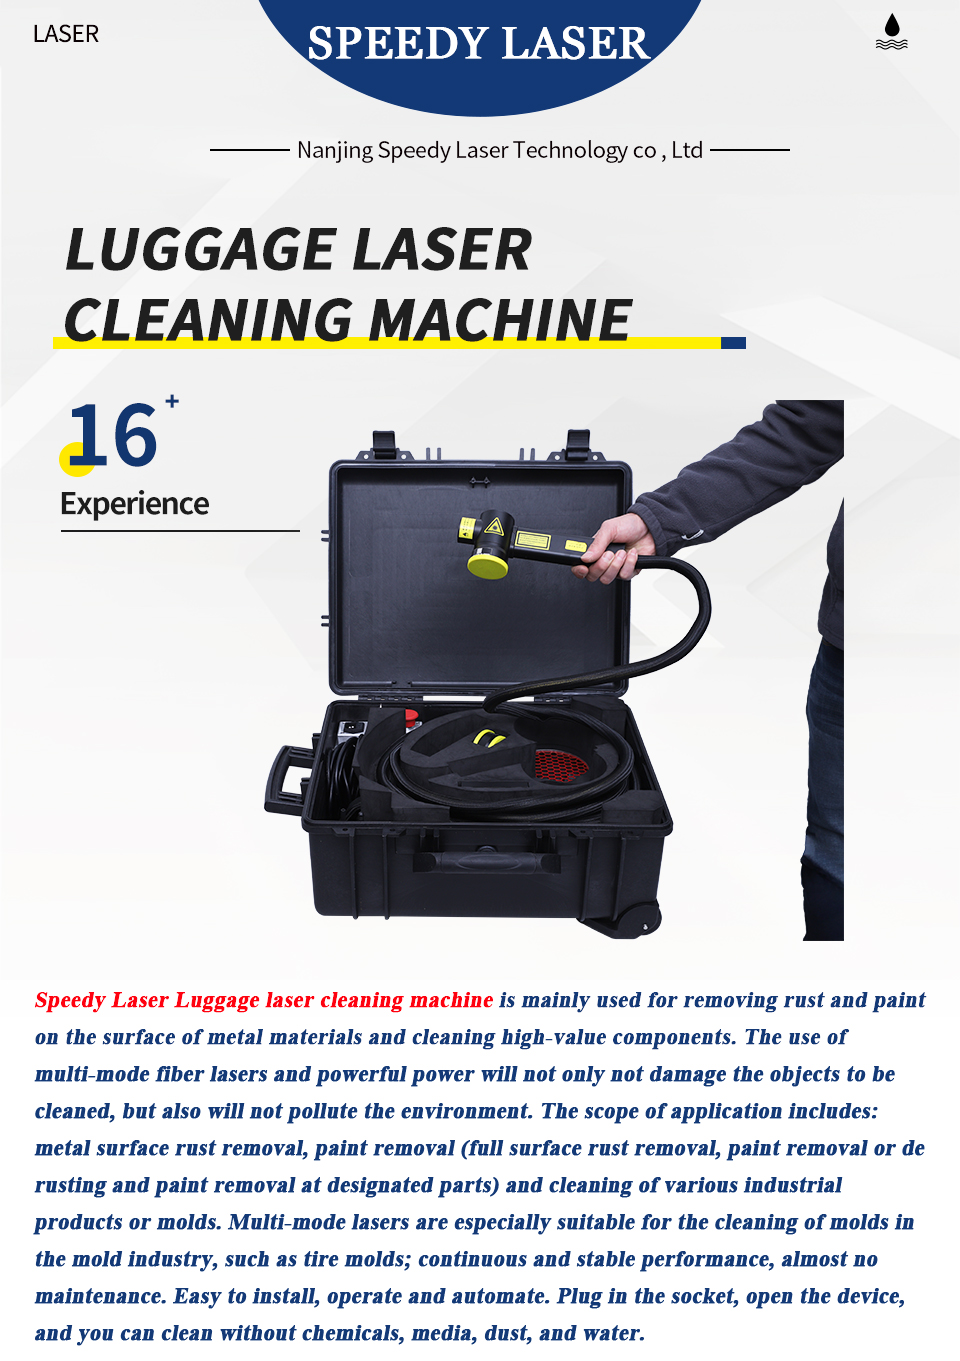 Speedy laser cleaning_01